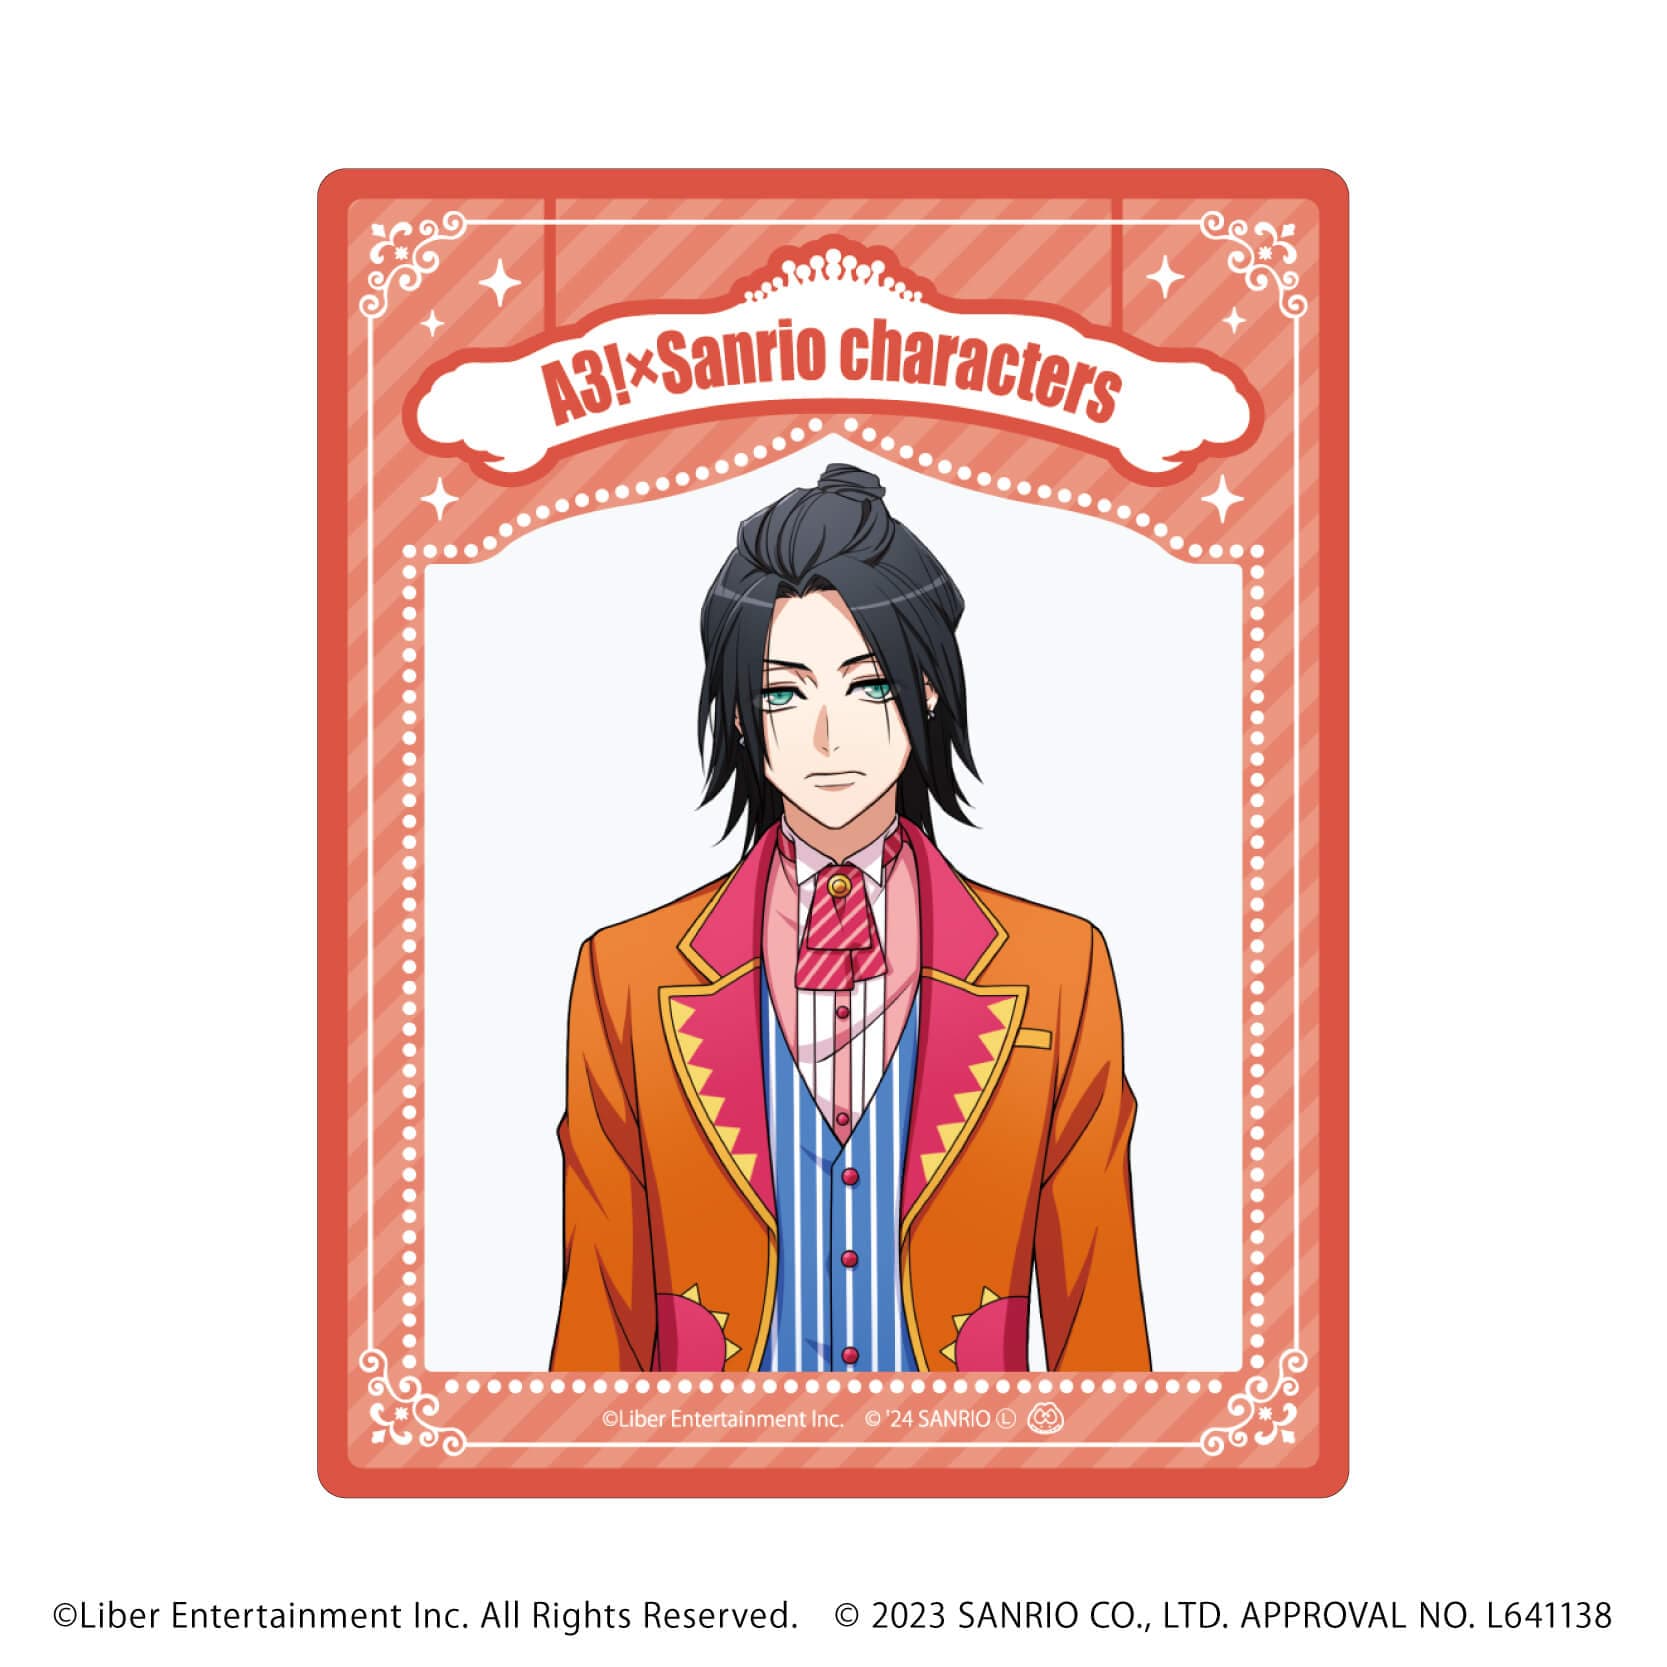 アクリルカード「A3!×Sanrio characters」08/A＆W ブラインド(12種)(公式イラスト)